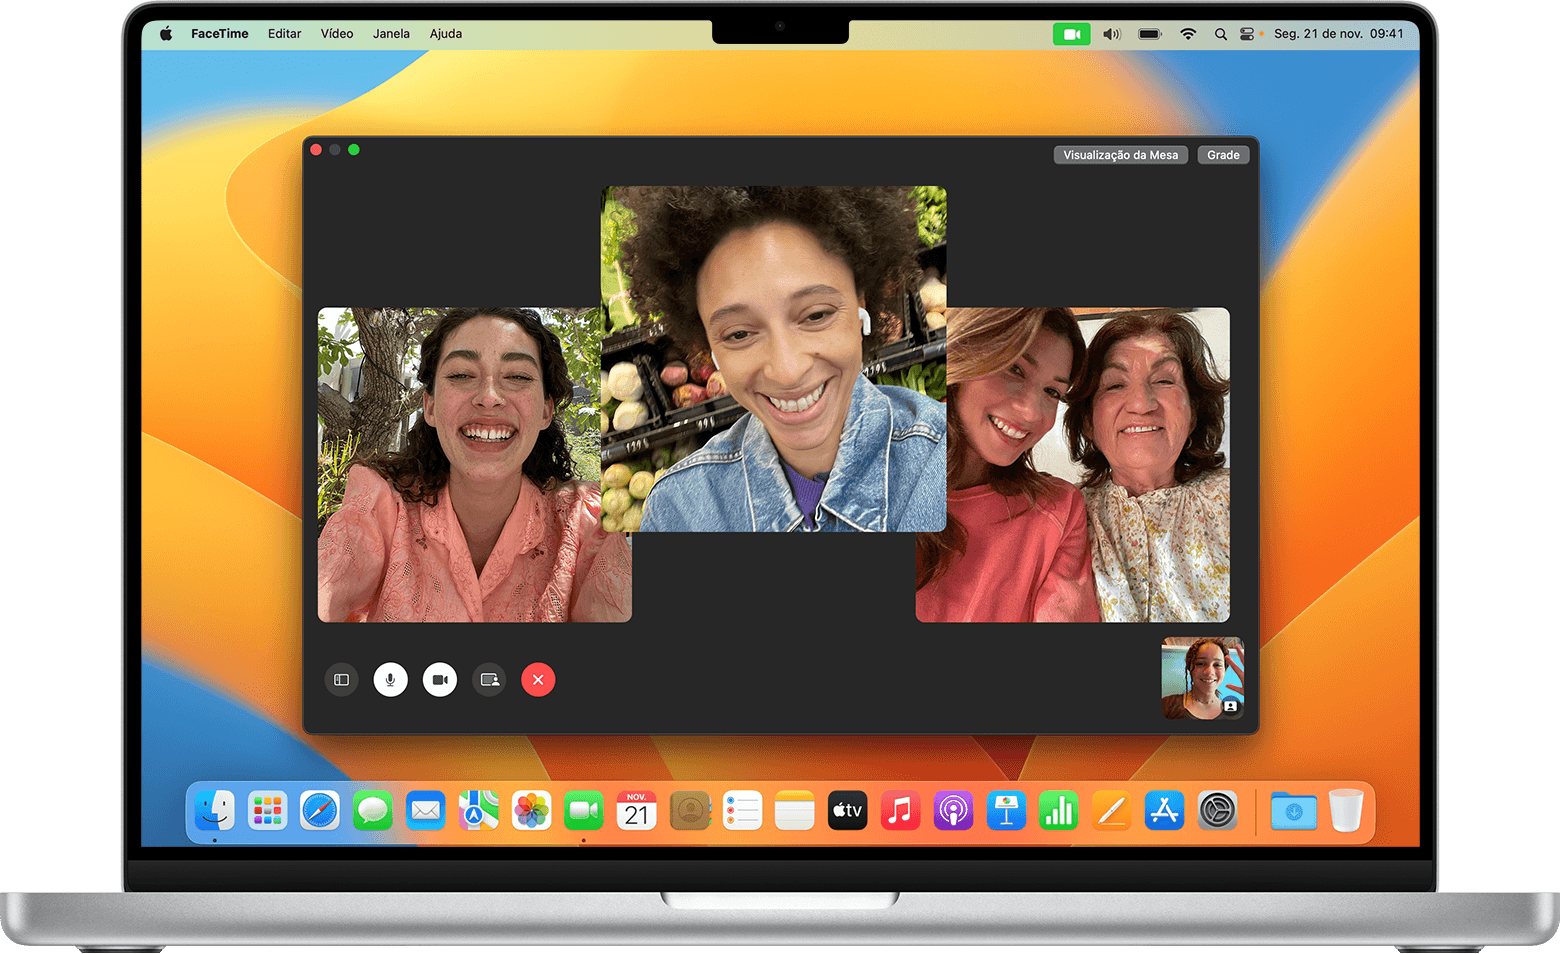 Tente criar um novo usuário no seu Mac e teste o FaceTime nessa conta.
Se o problema persistir, entre em contato com o suporte da Apple para obter assistência.